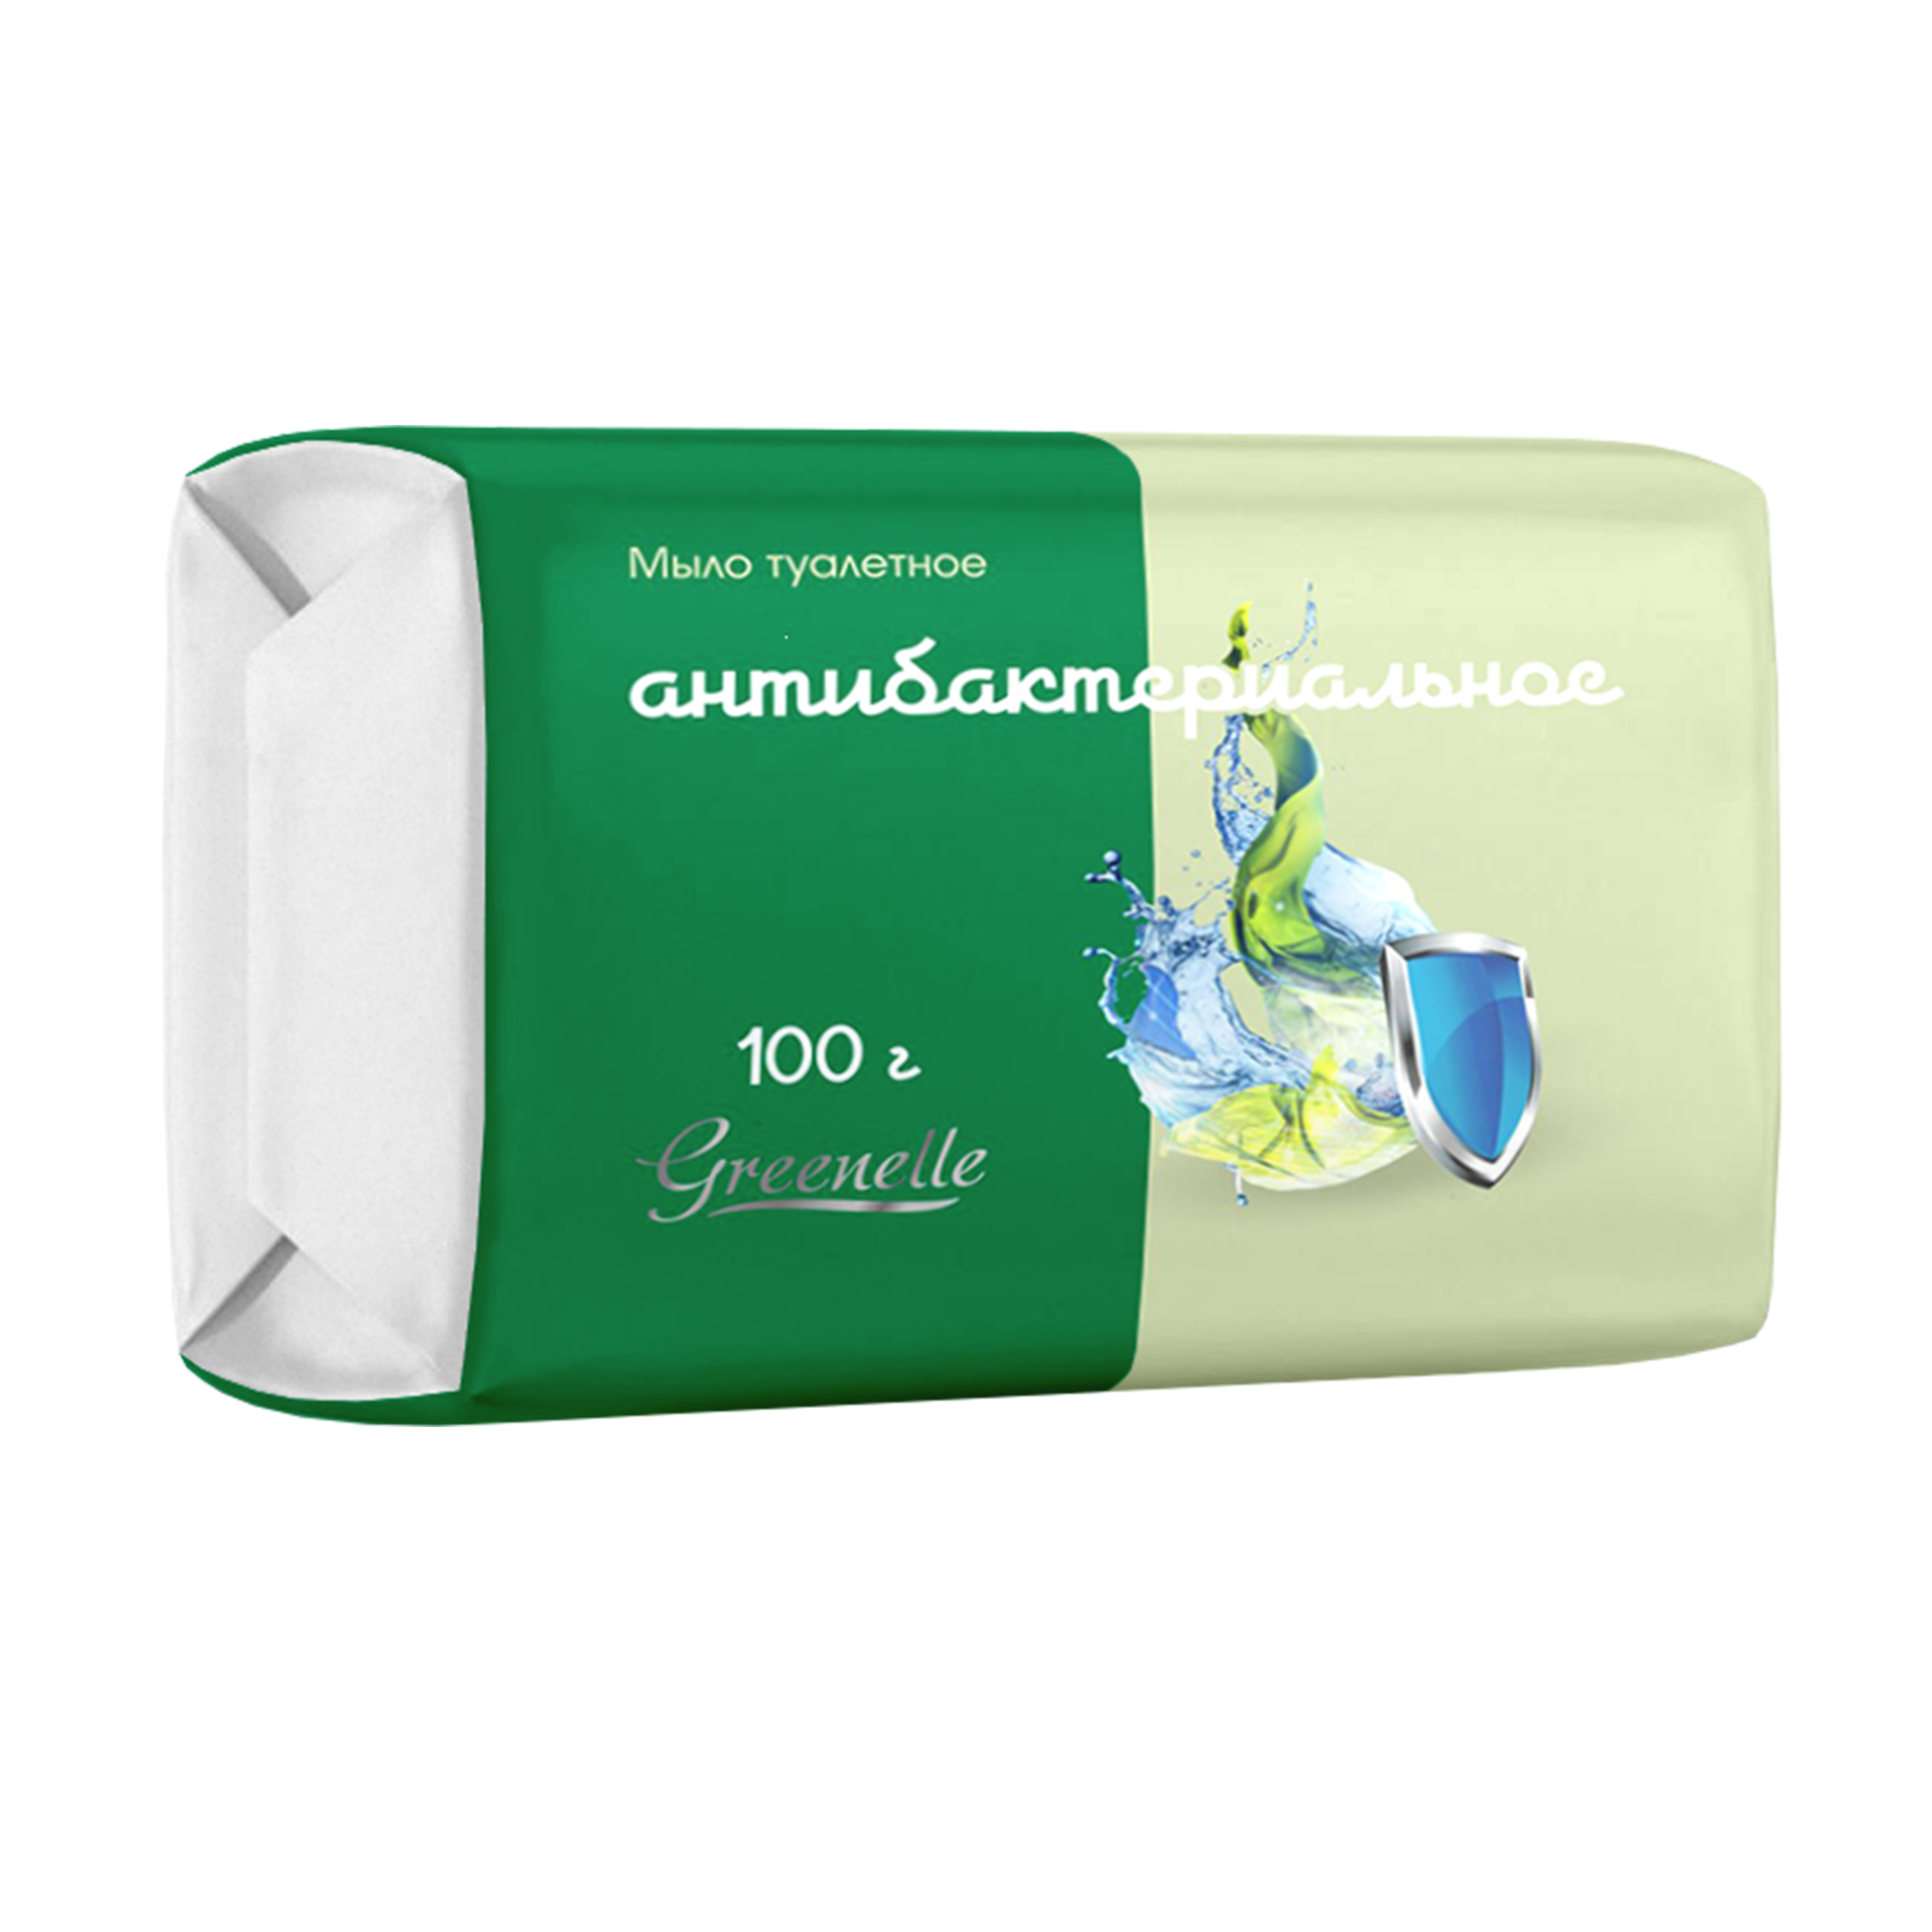 Special soap Antibacterial in bulk